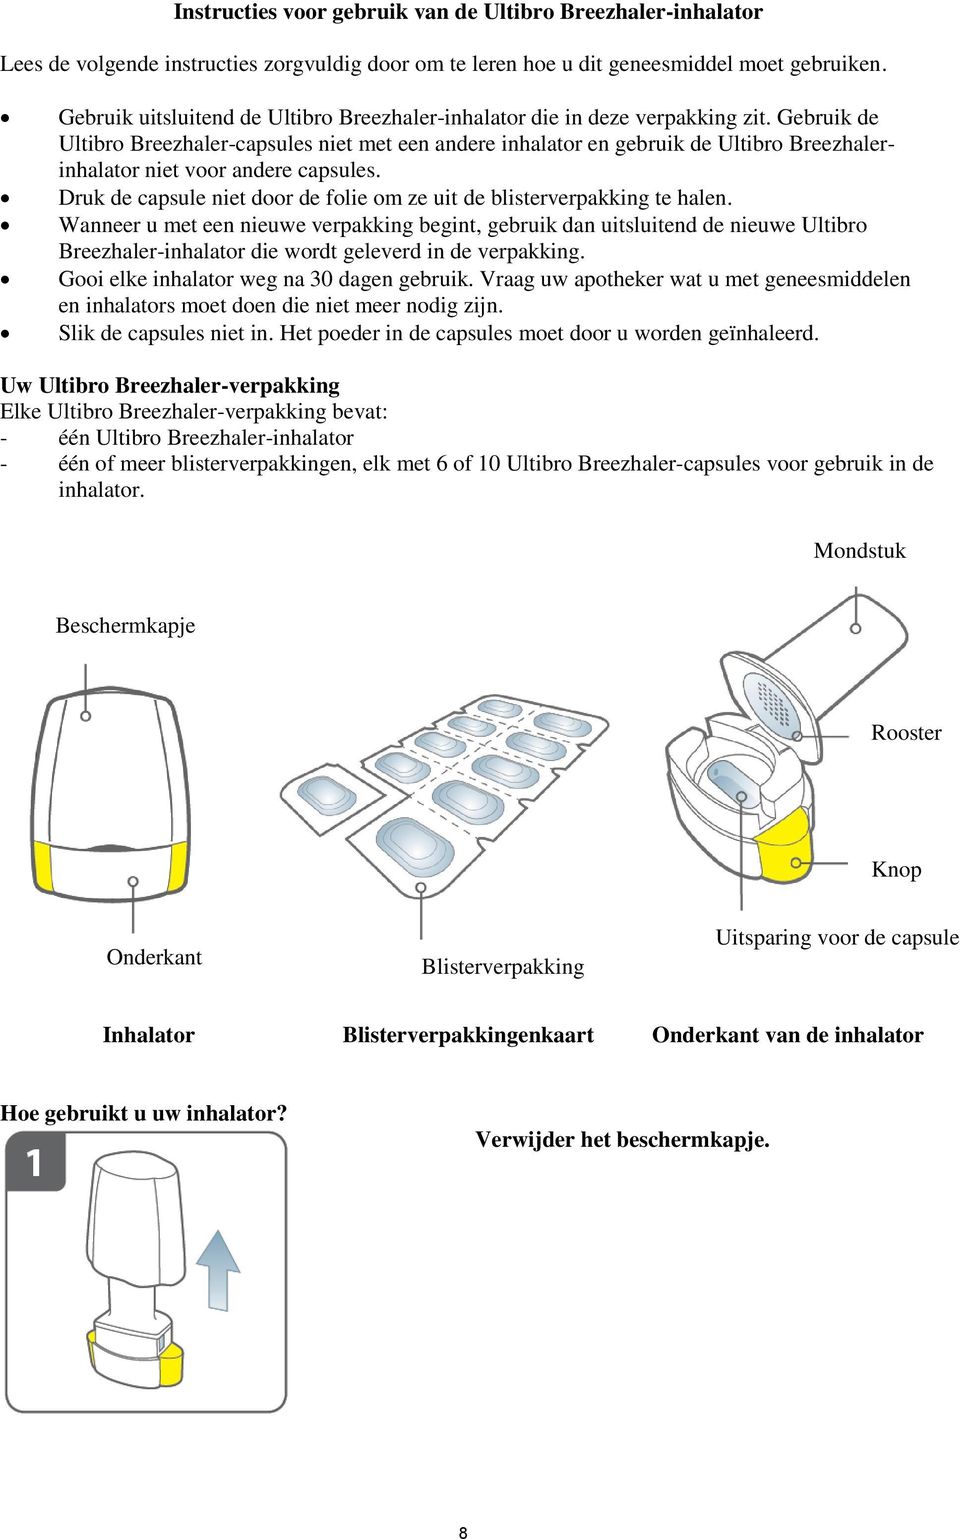 Gebruik de Ultibro Breezhaler-capsules niet met een andere inhalator en gebruik de Ultibro Breezhalerinhalator niet voor andere capsules.